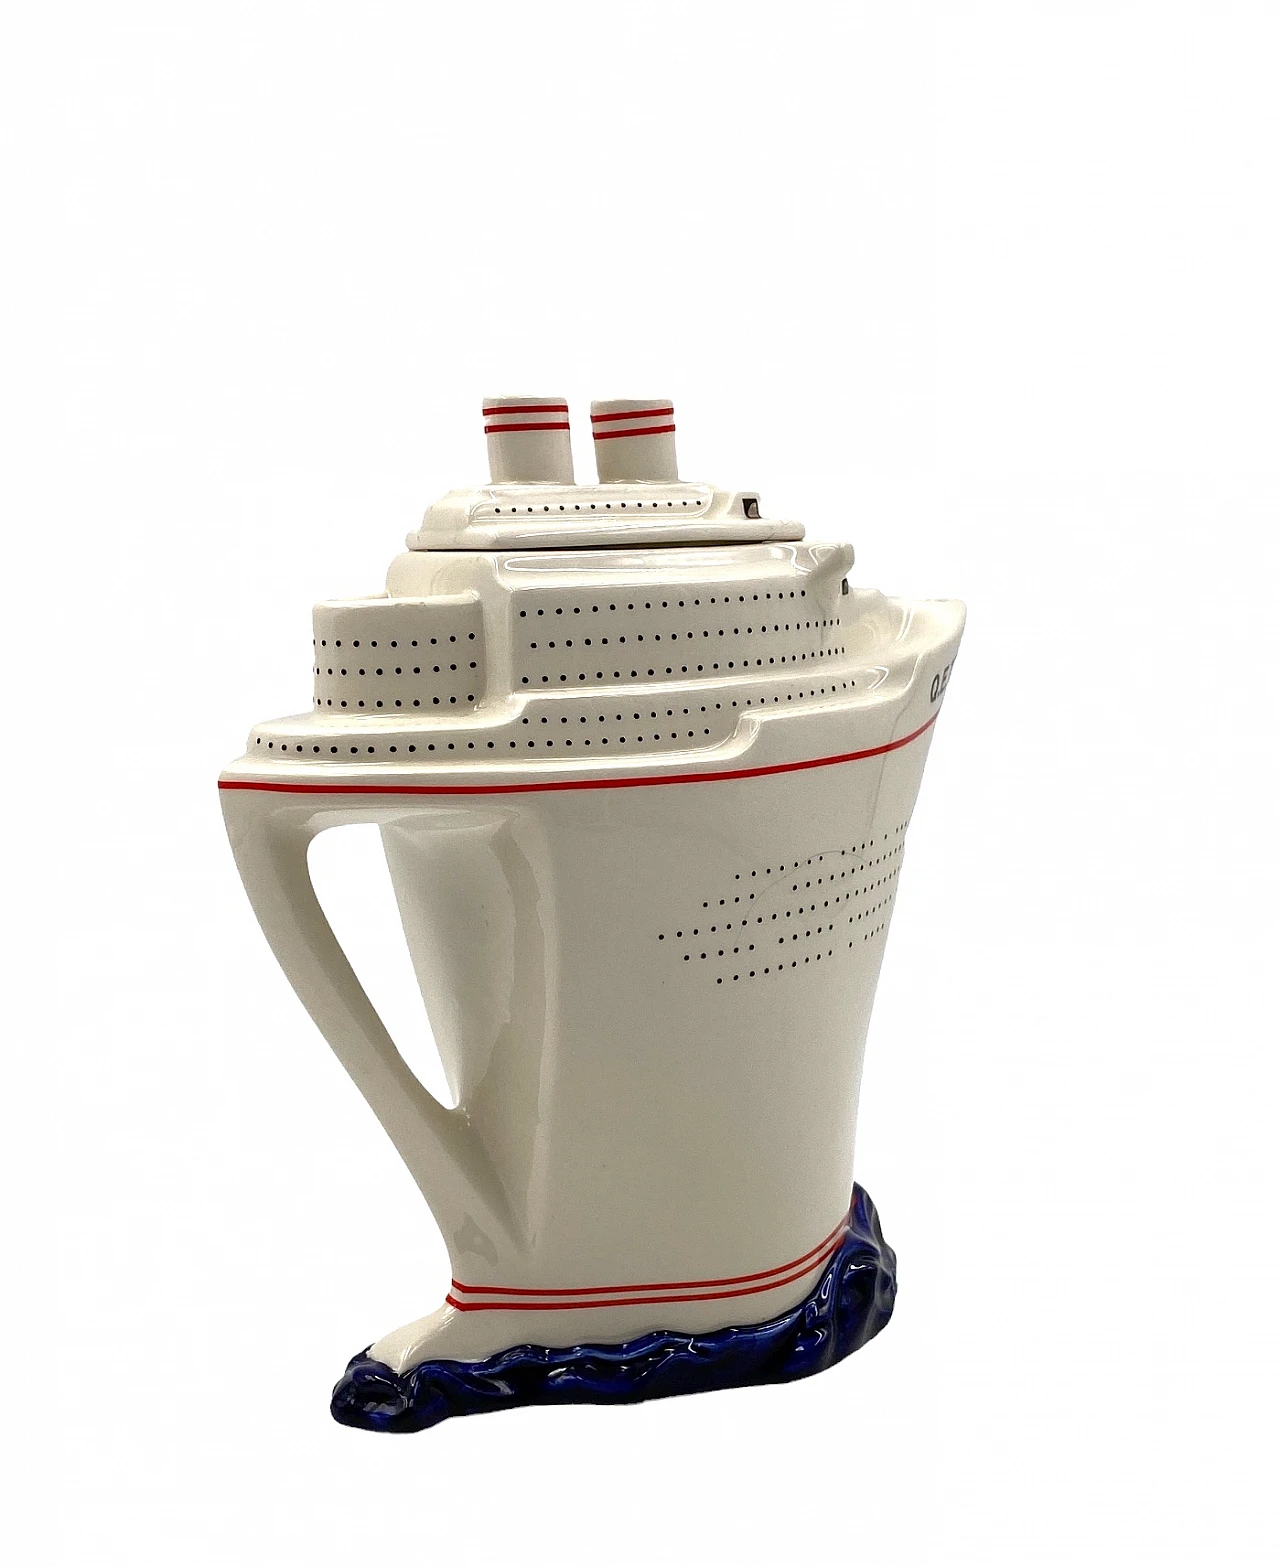 Queen Elizabeth II cruise ship teapot by Paul Cardew 17